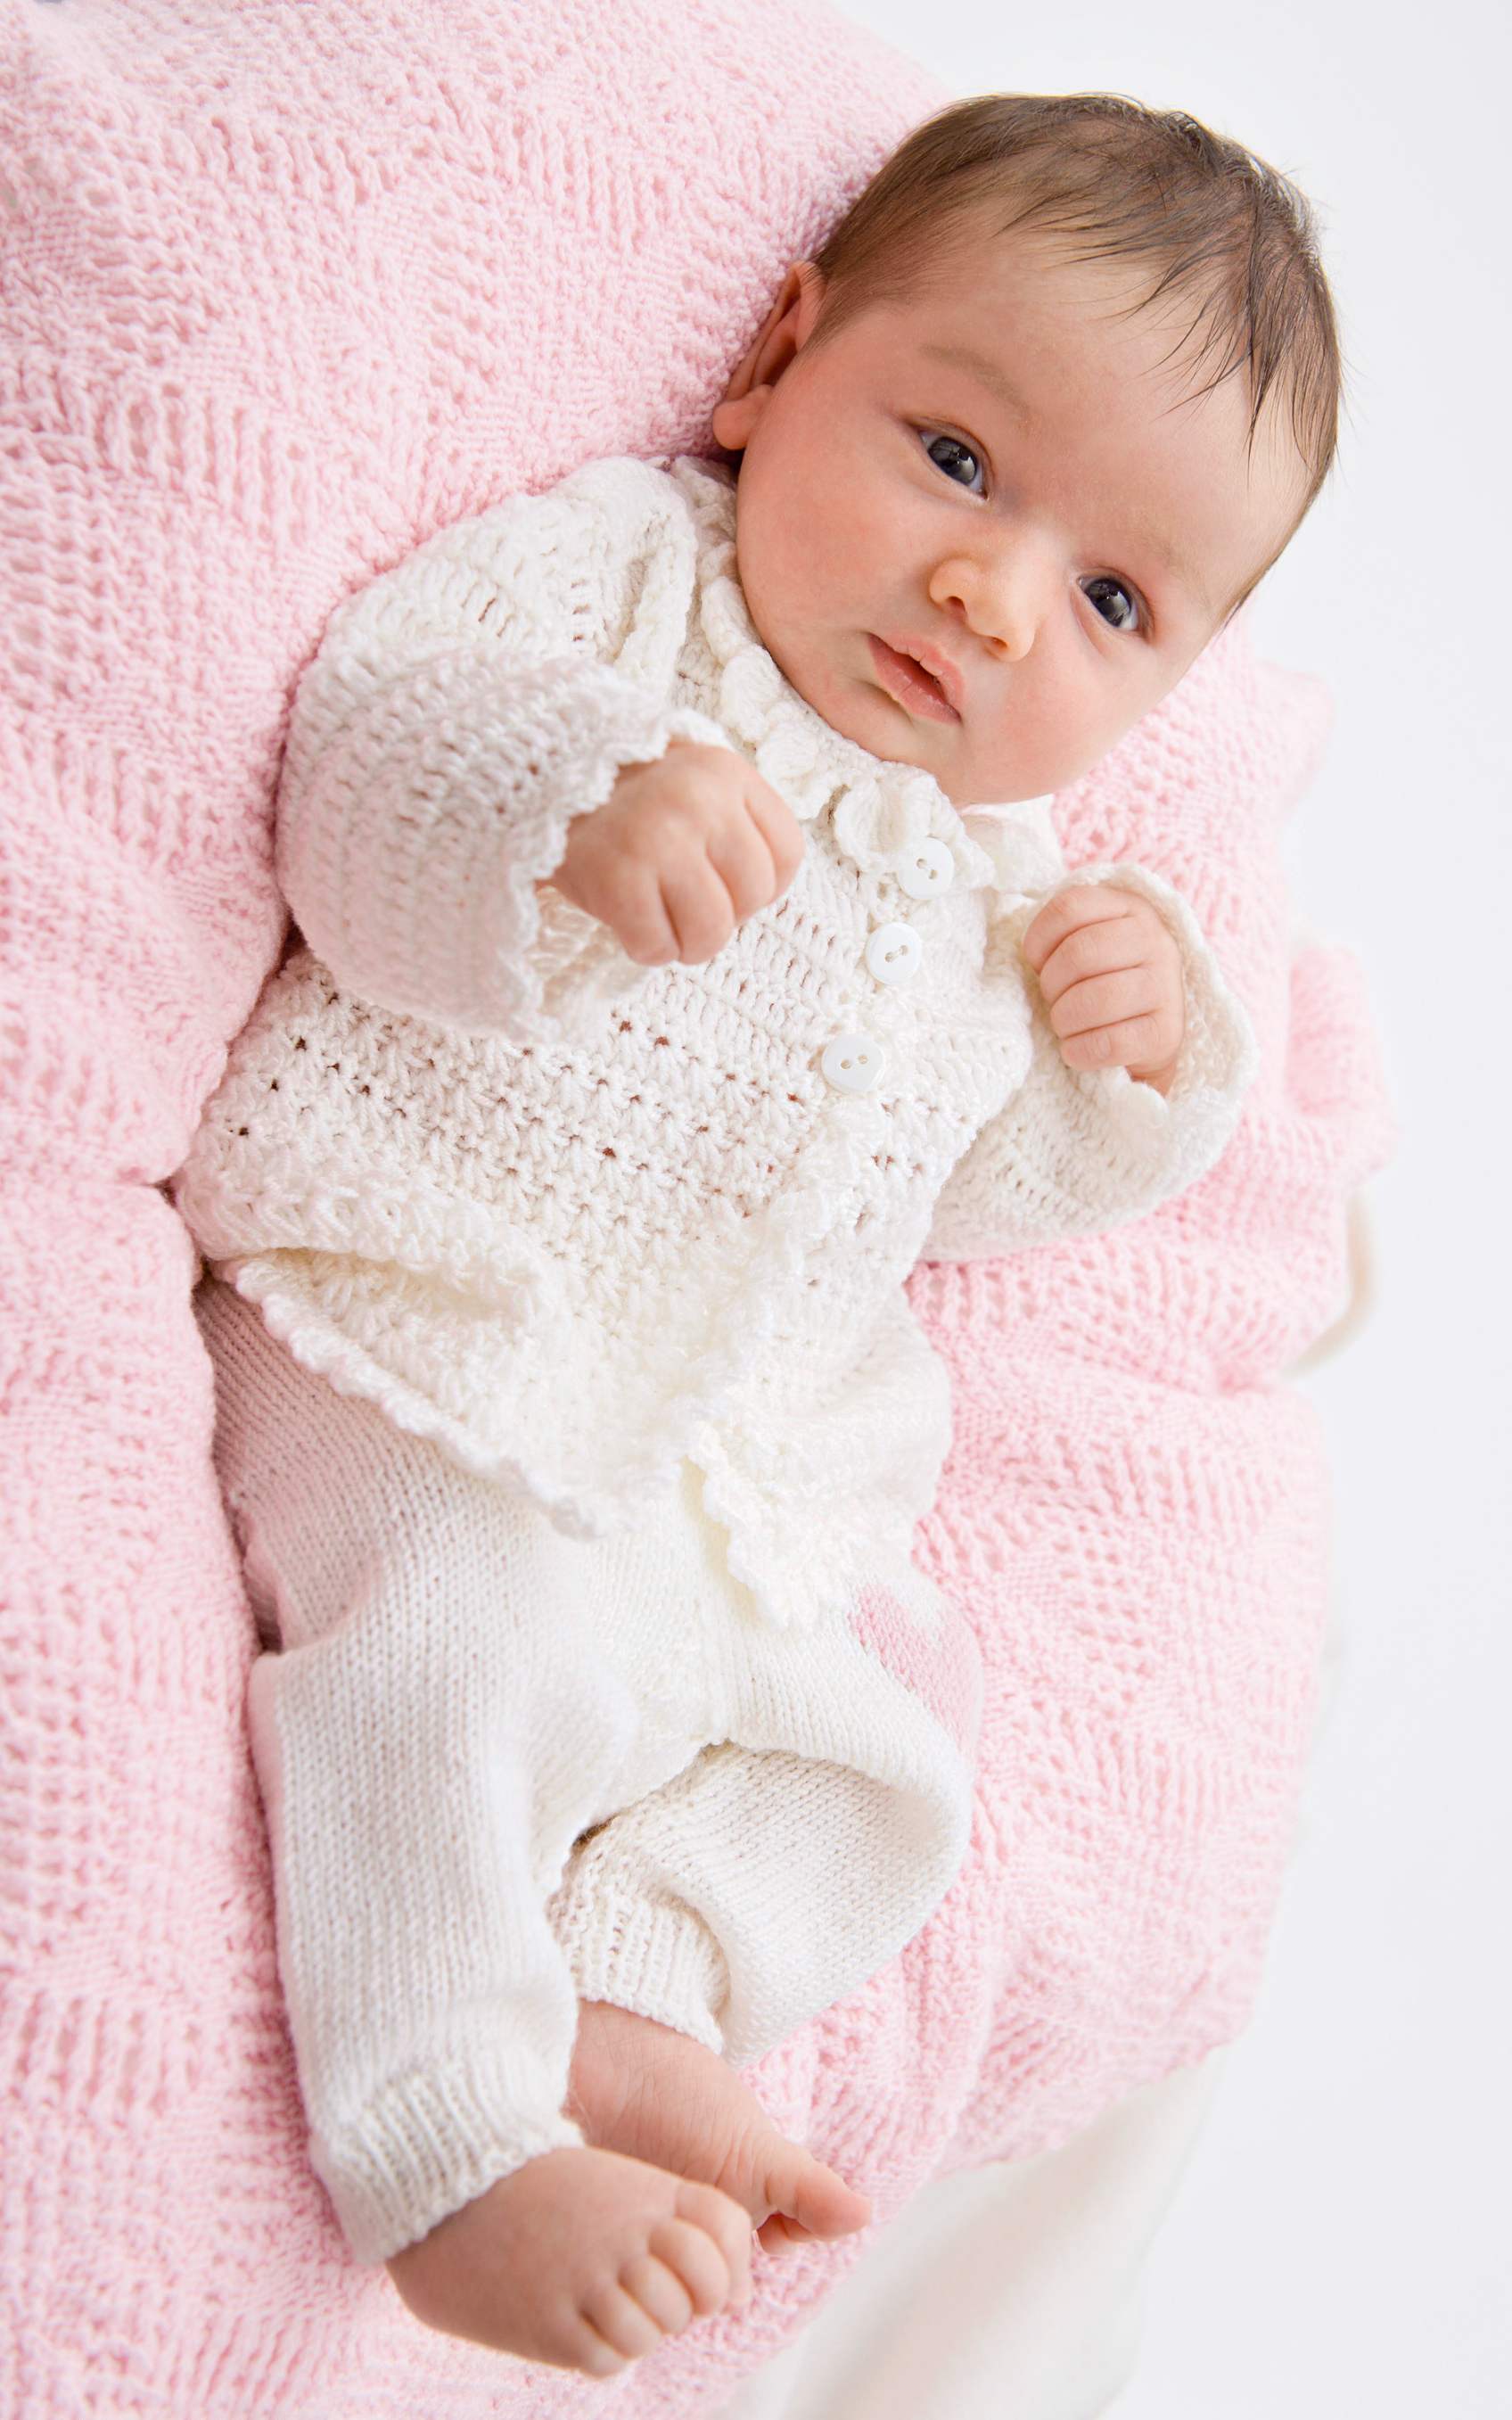 Baby Jacke, Hose, Mütze und Schuhe - Häkelset von LANA GROSSA jetzt online kaufen bei OONIQUE